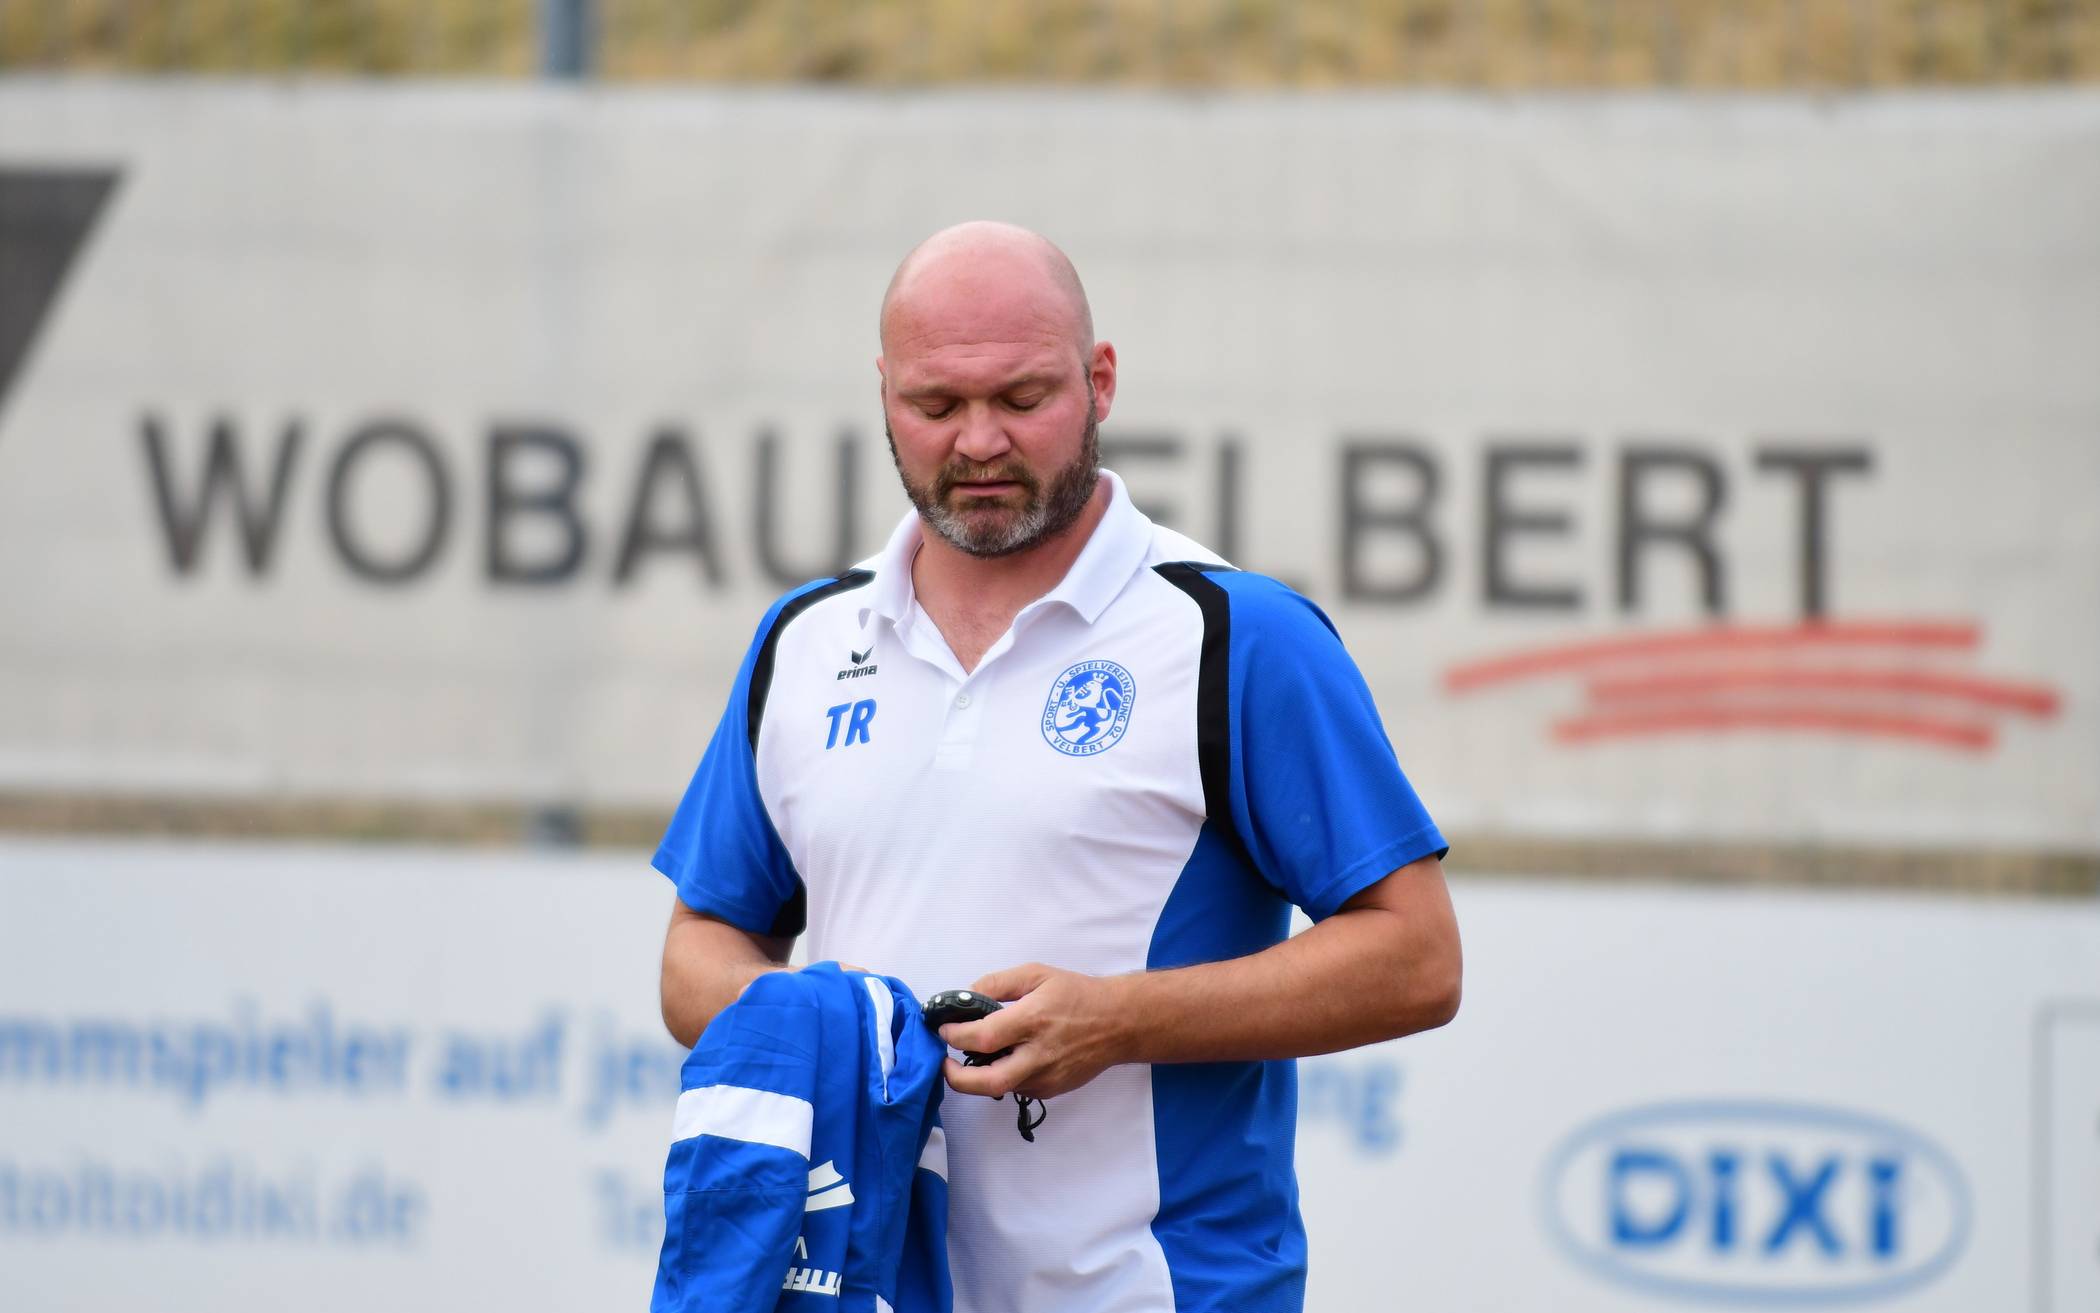 Alexander Voigt ist neuer WSV-Trainer